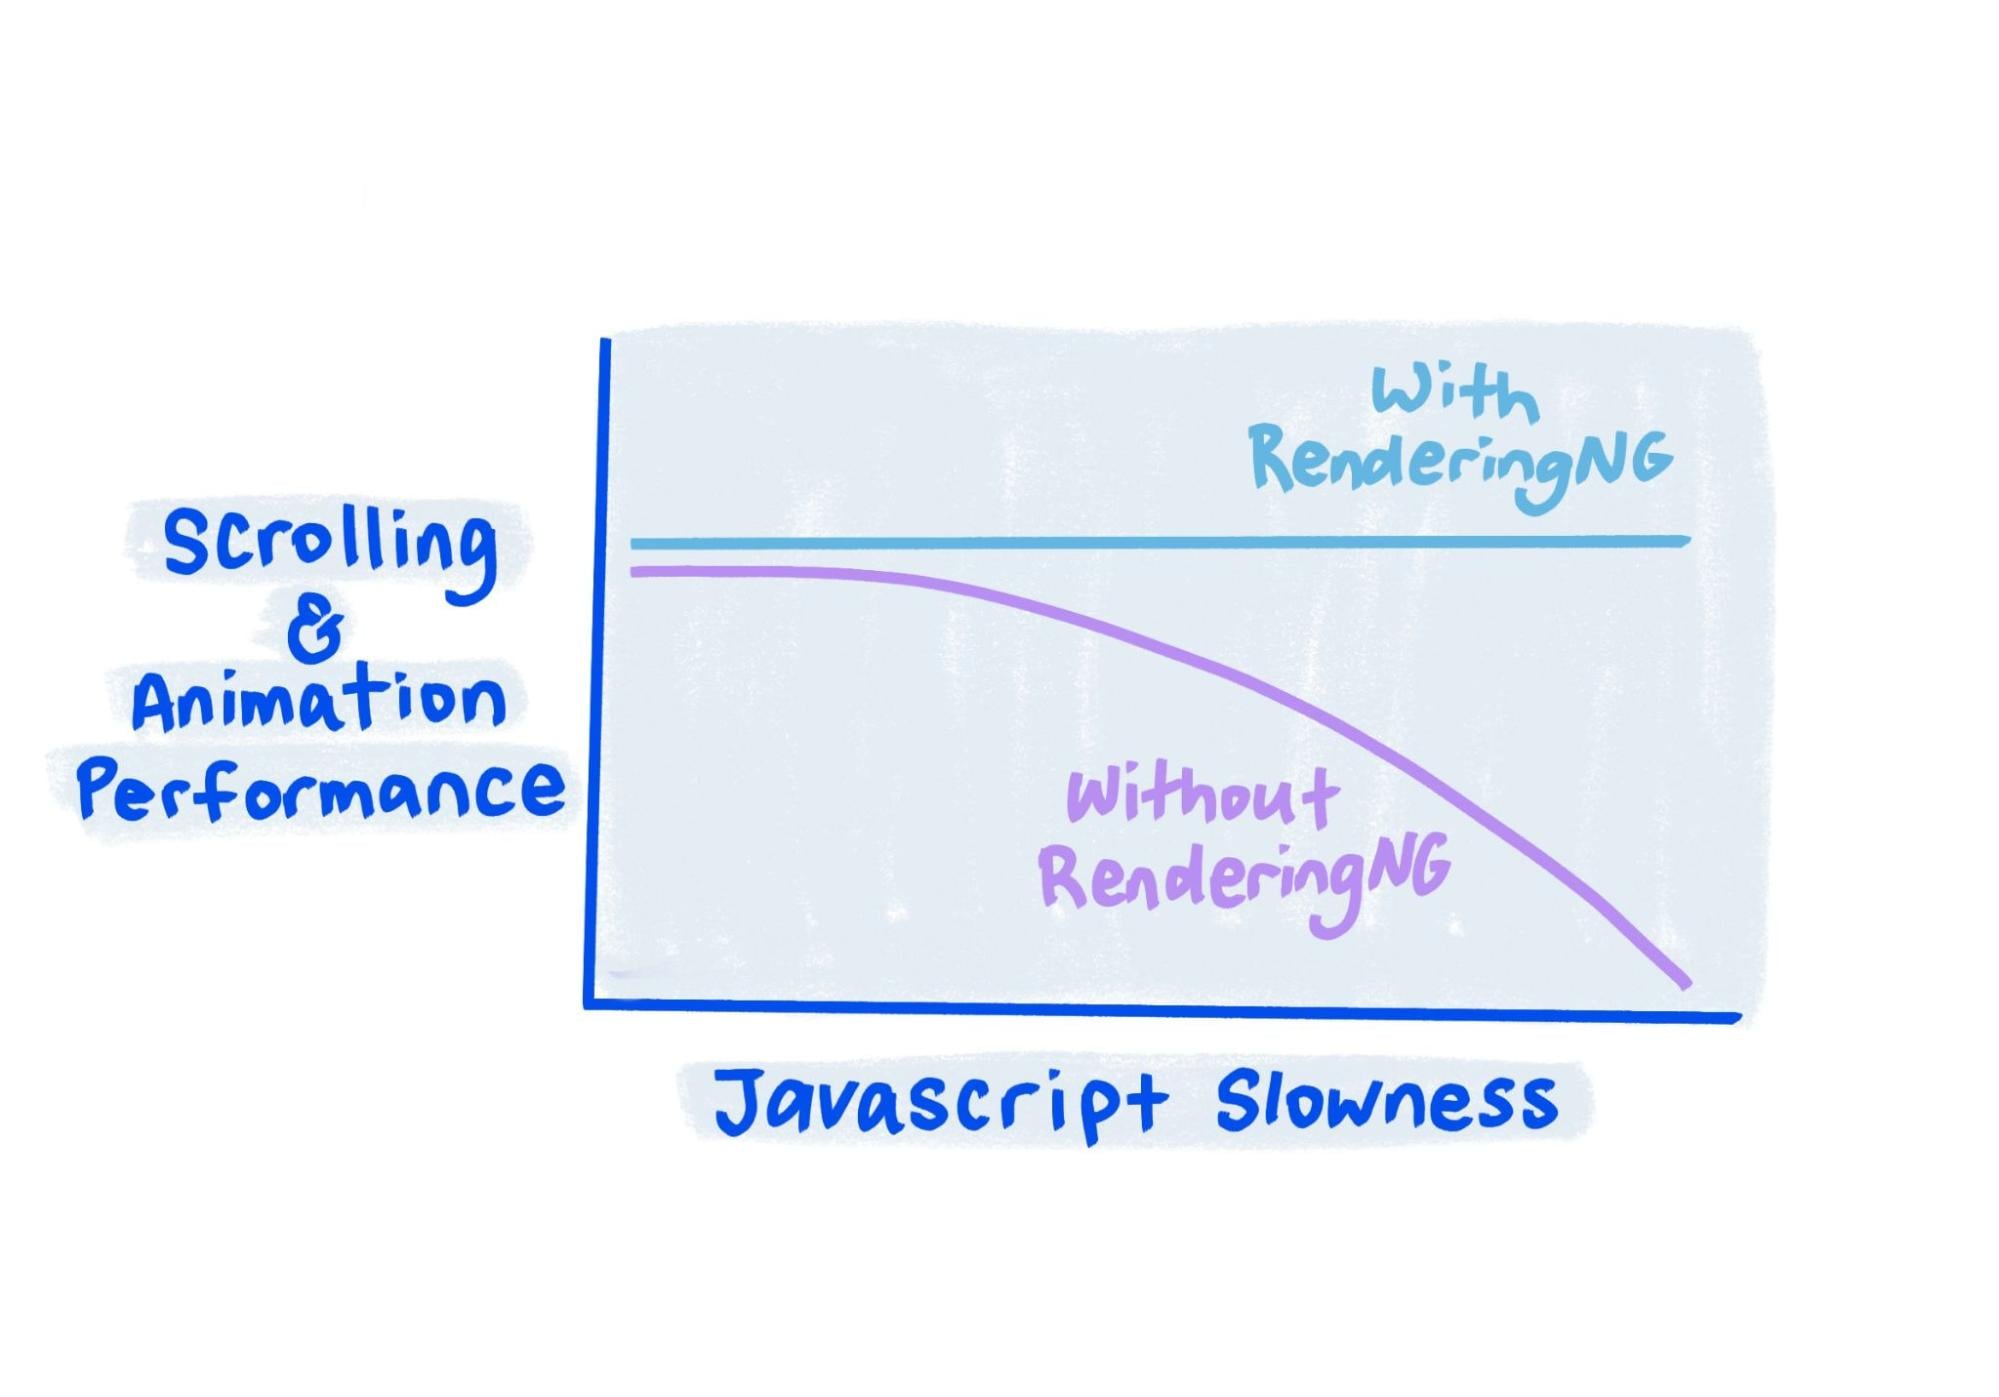 Sketch pokazuje, że przy funkcji RenderingNG wydajność jest na stałym poziomie nawet wtedy, gdy JavaScript działa bardzo wolno.